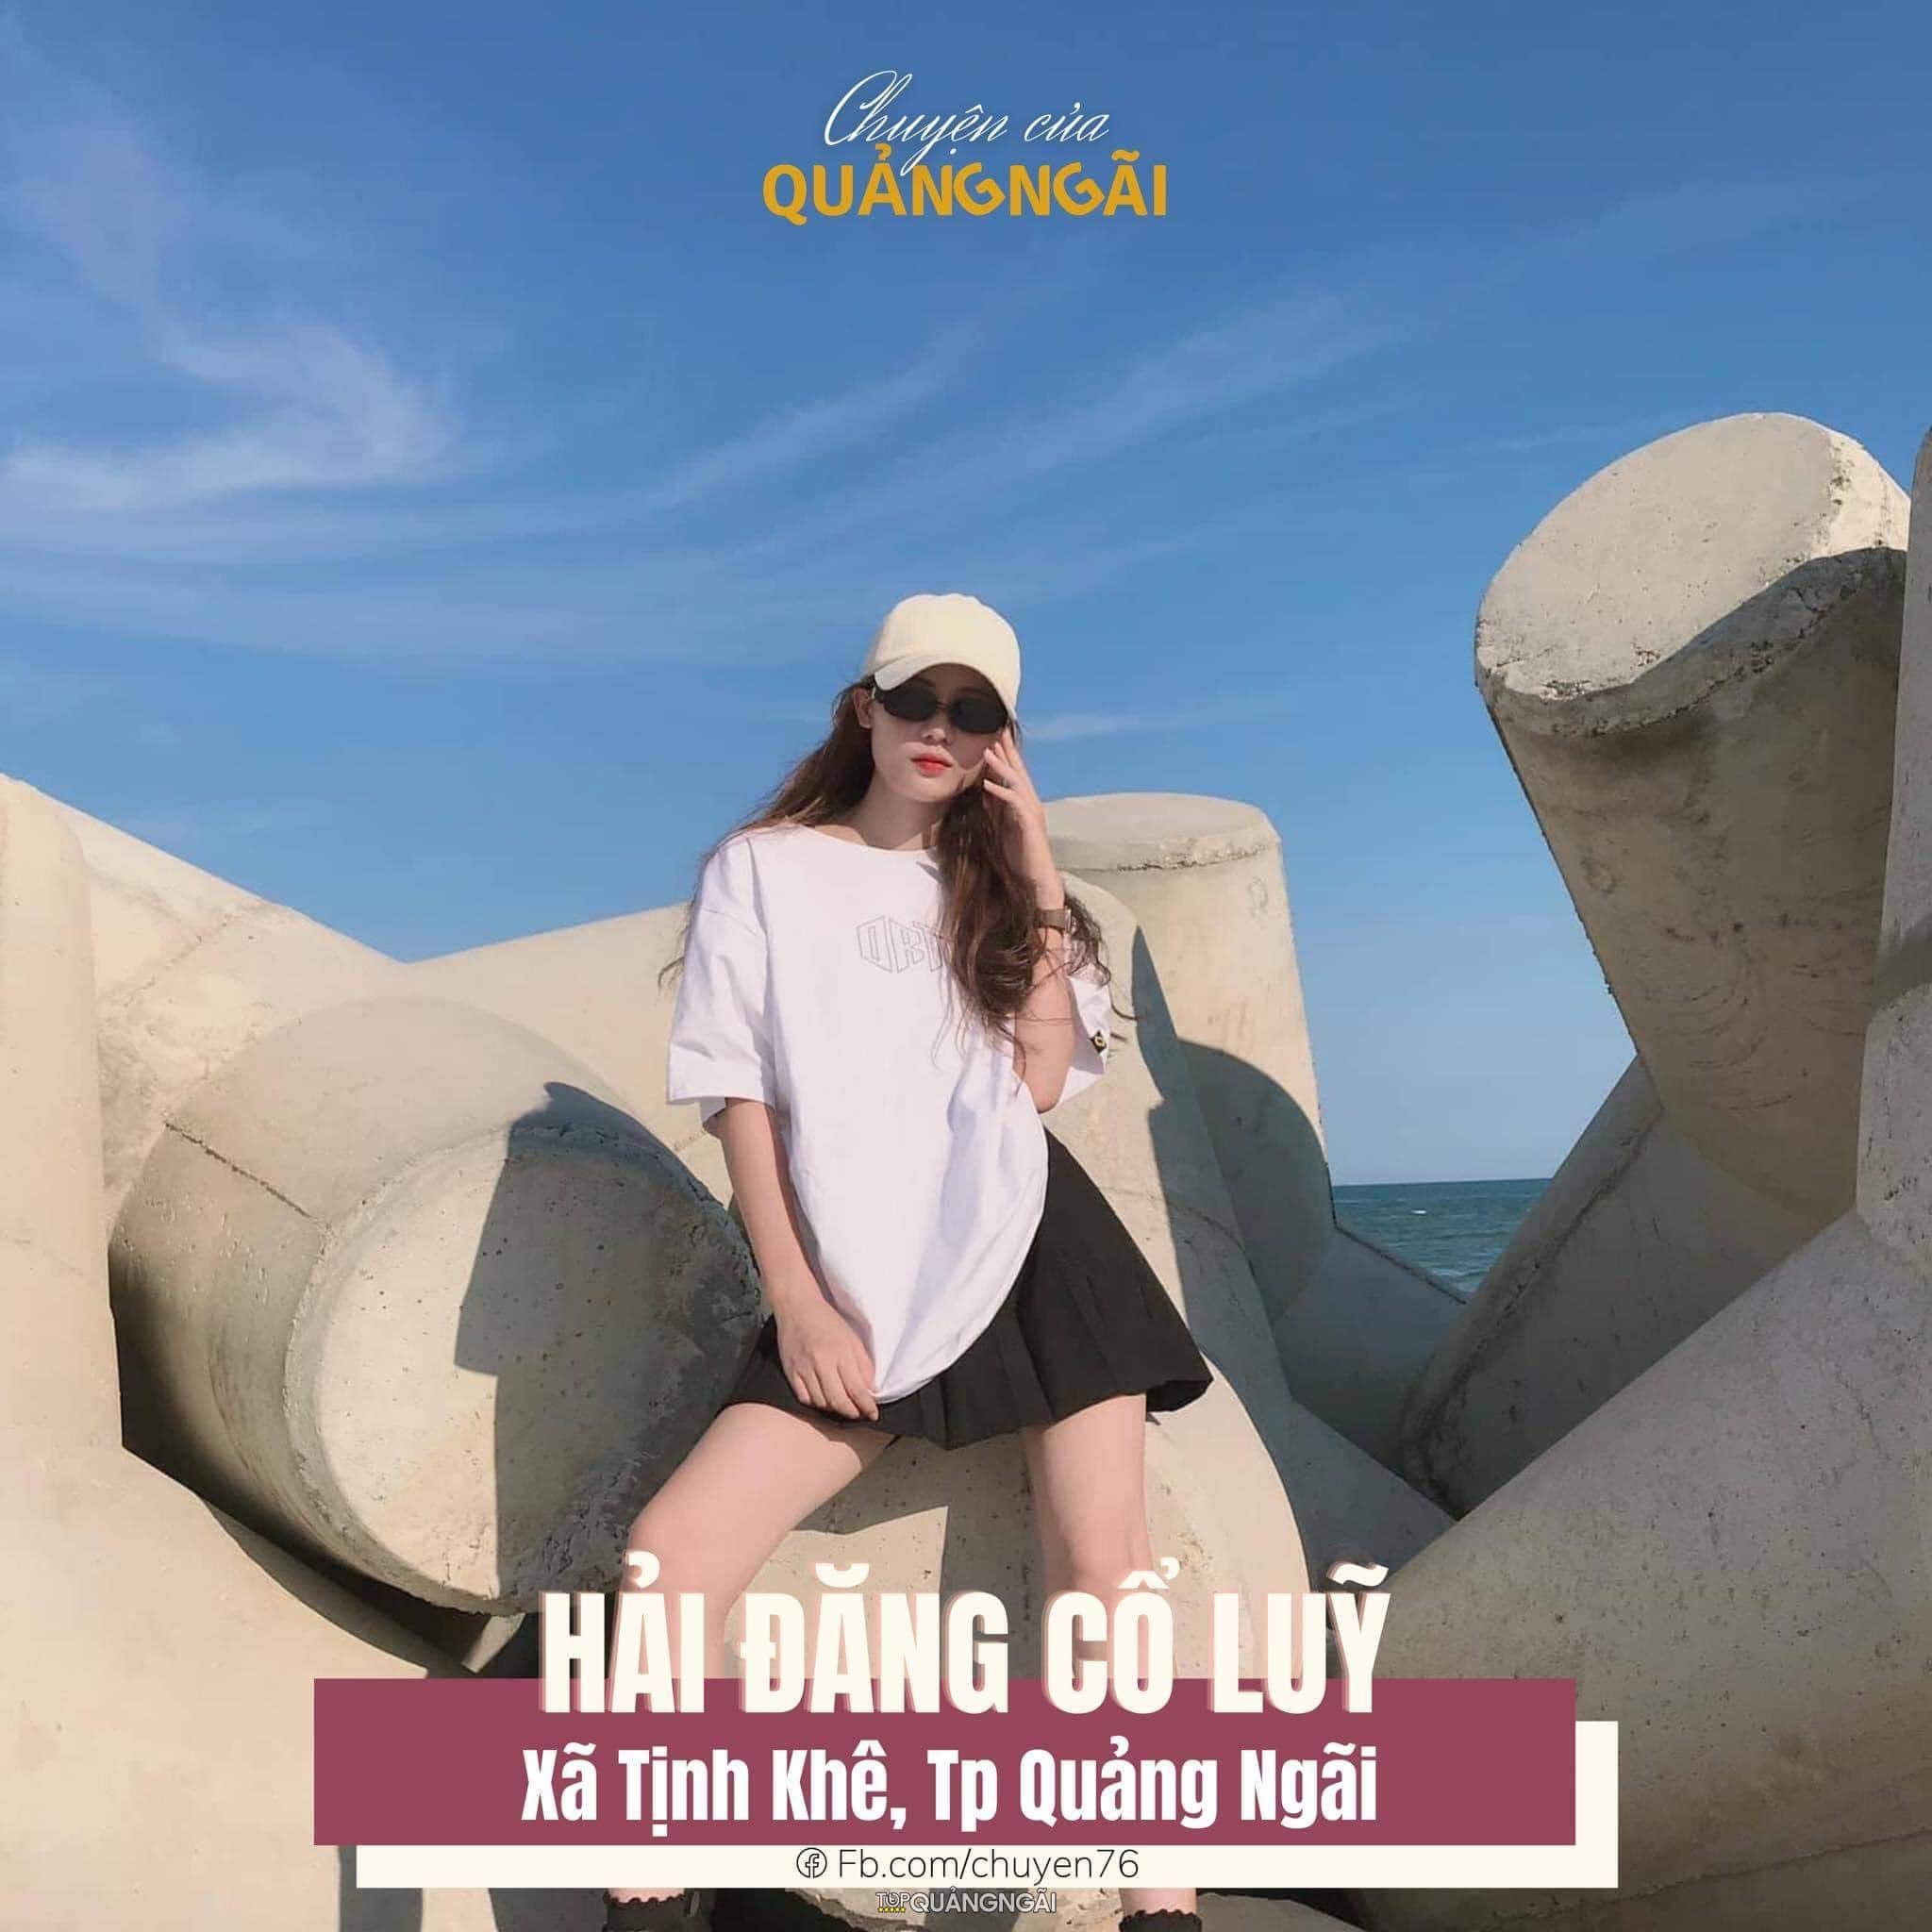 Top địa điểm check-in khi du lịch Quảng Ngãi